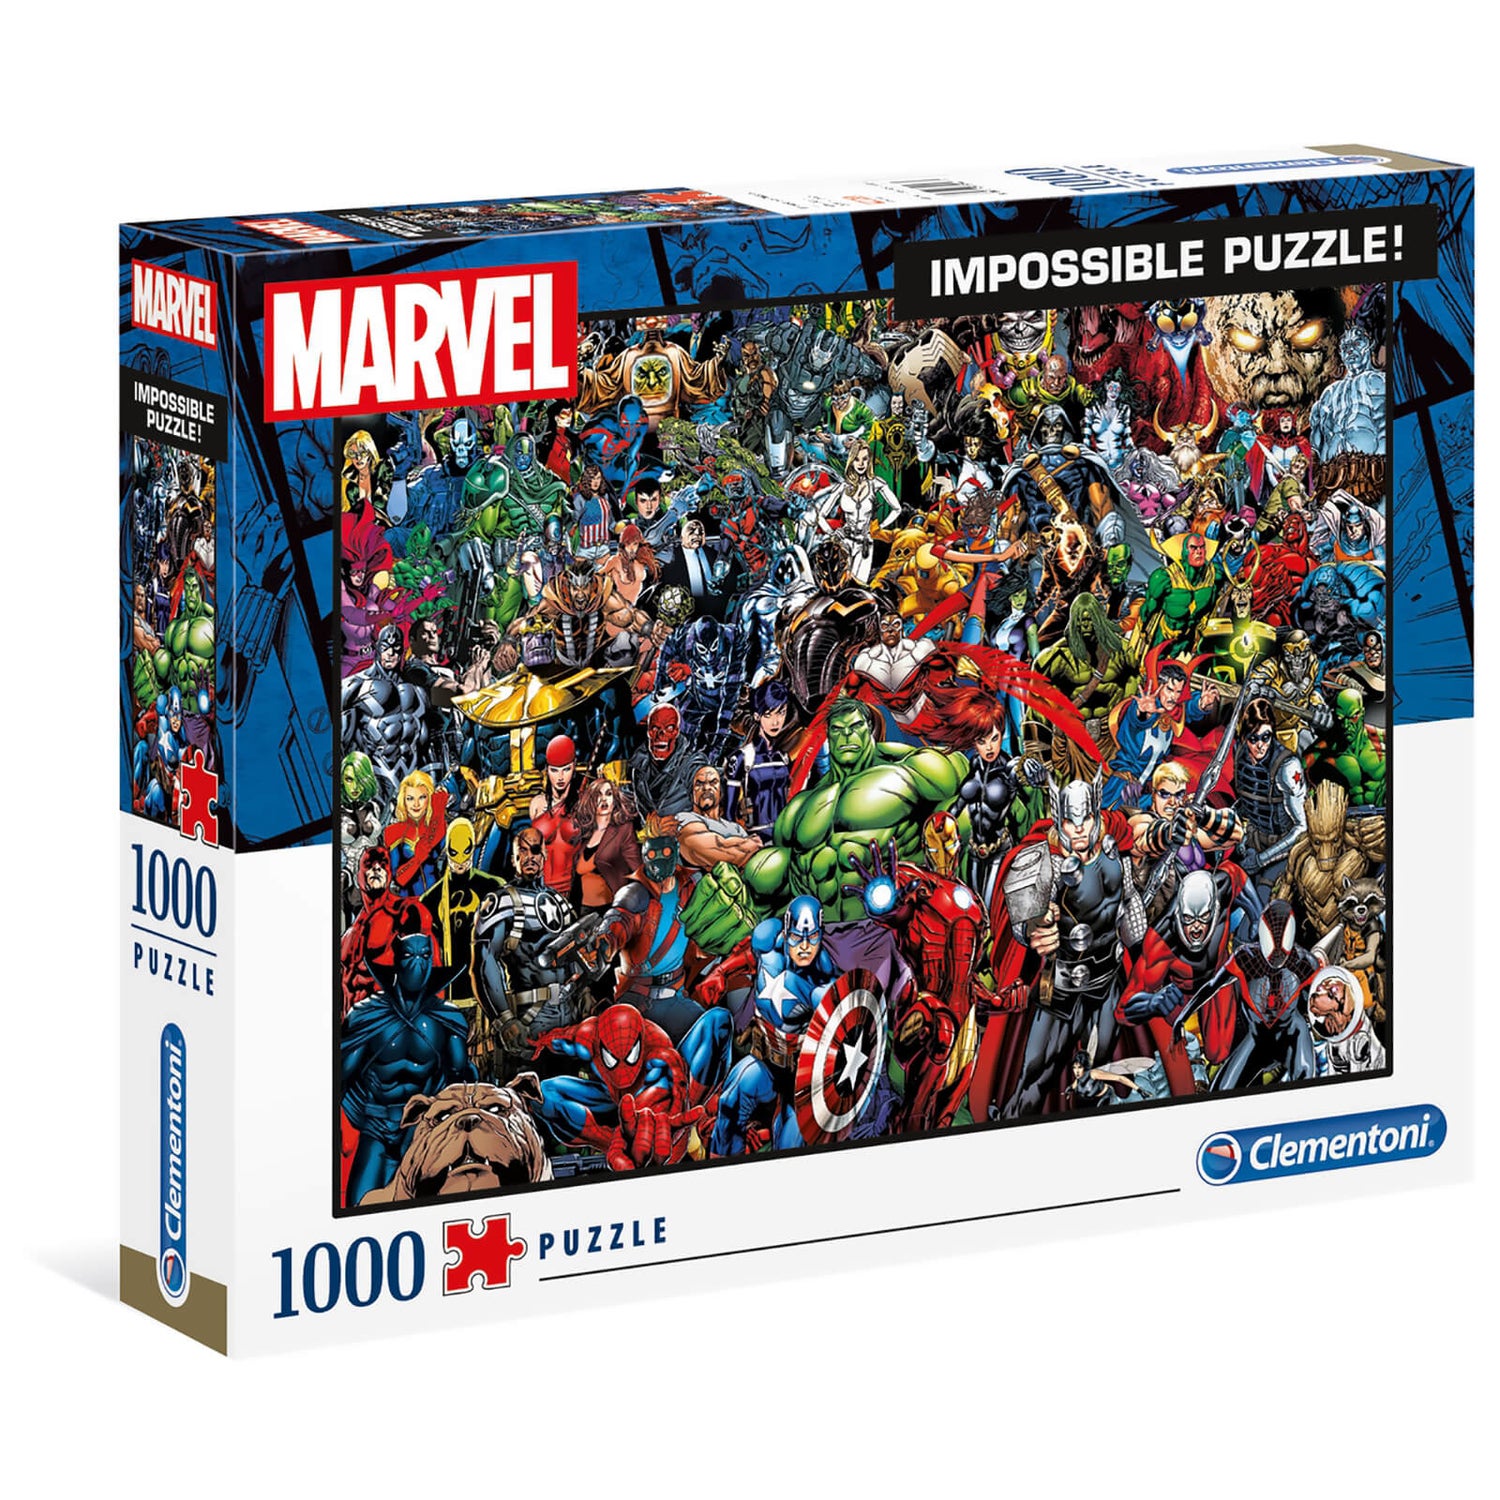 Clementoni 1000pcs Impossibe Jigsaw Puzzle - Marvel Avengers